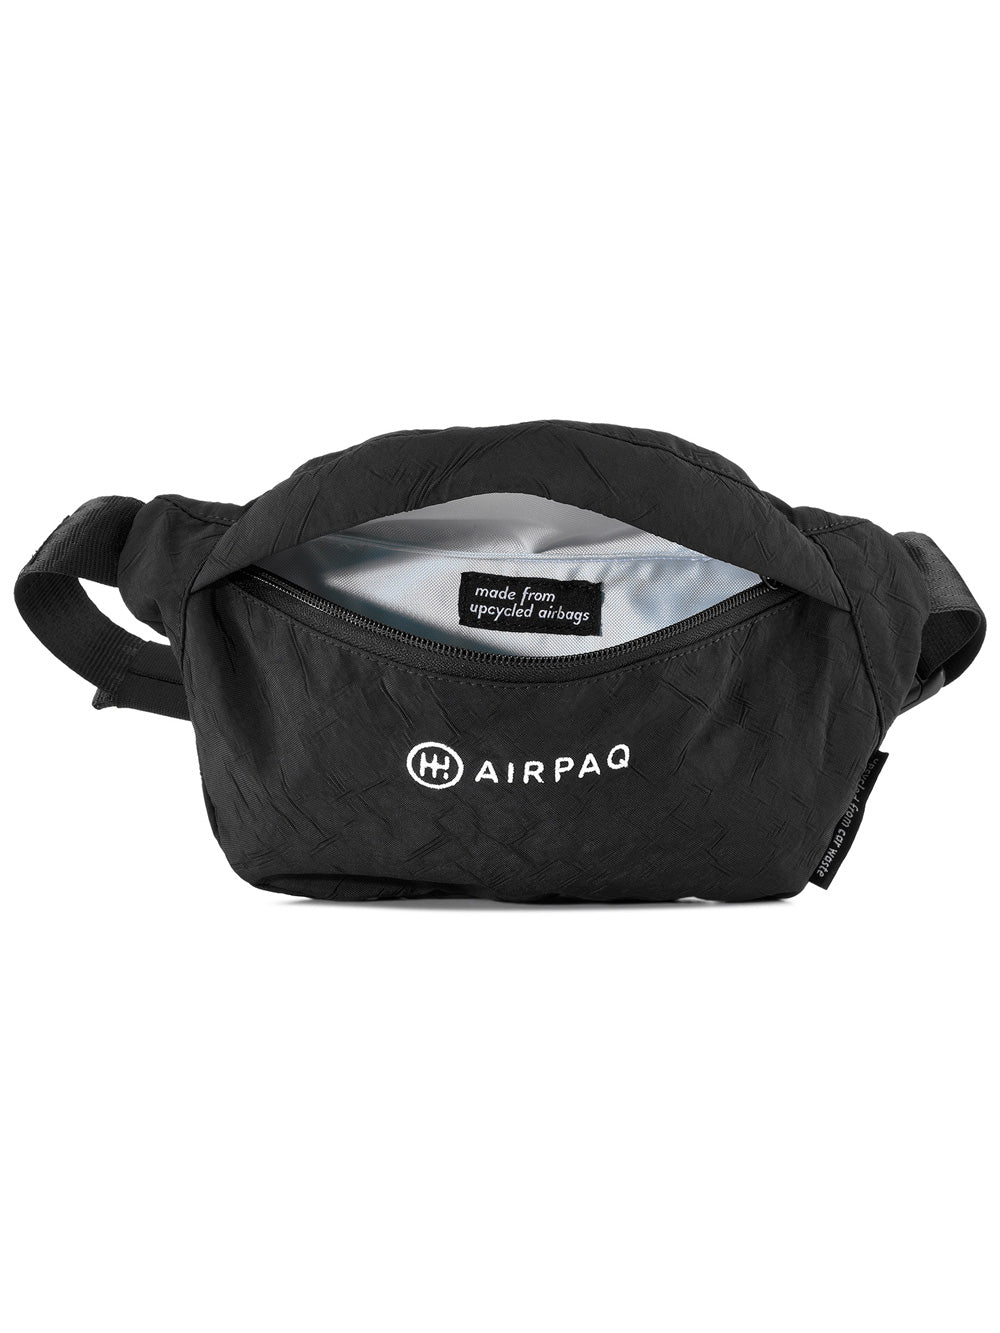 Airpaq hip bag HipBaq black 